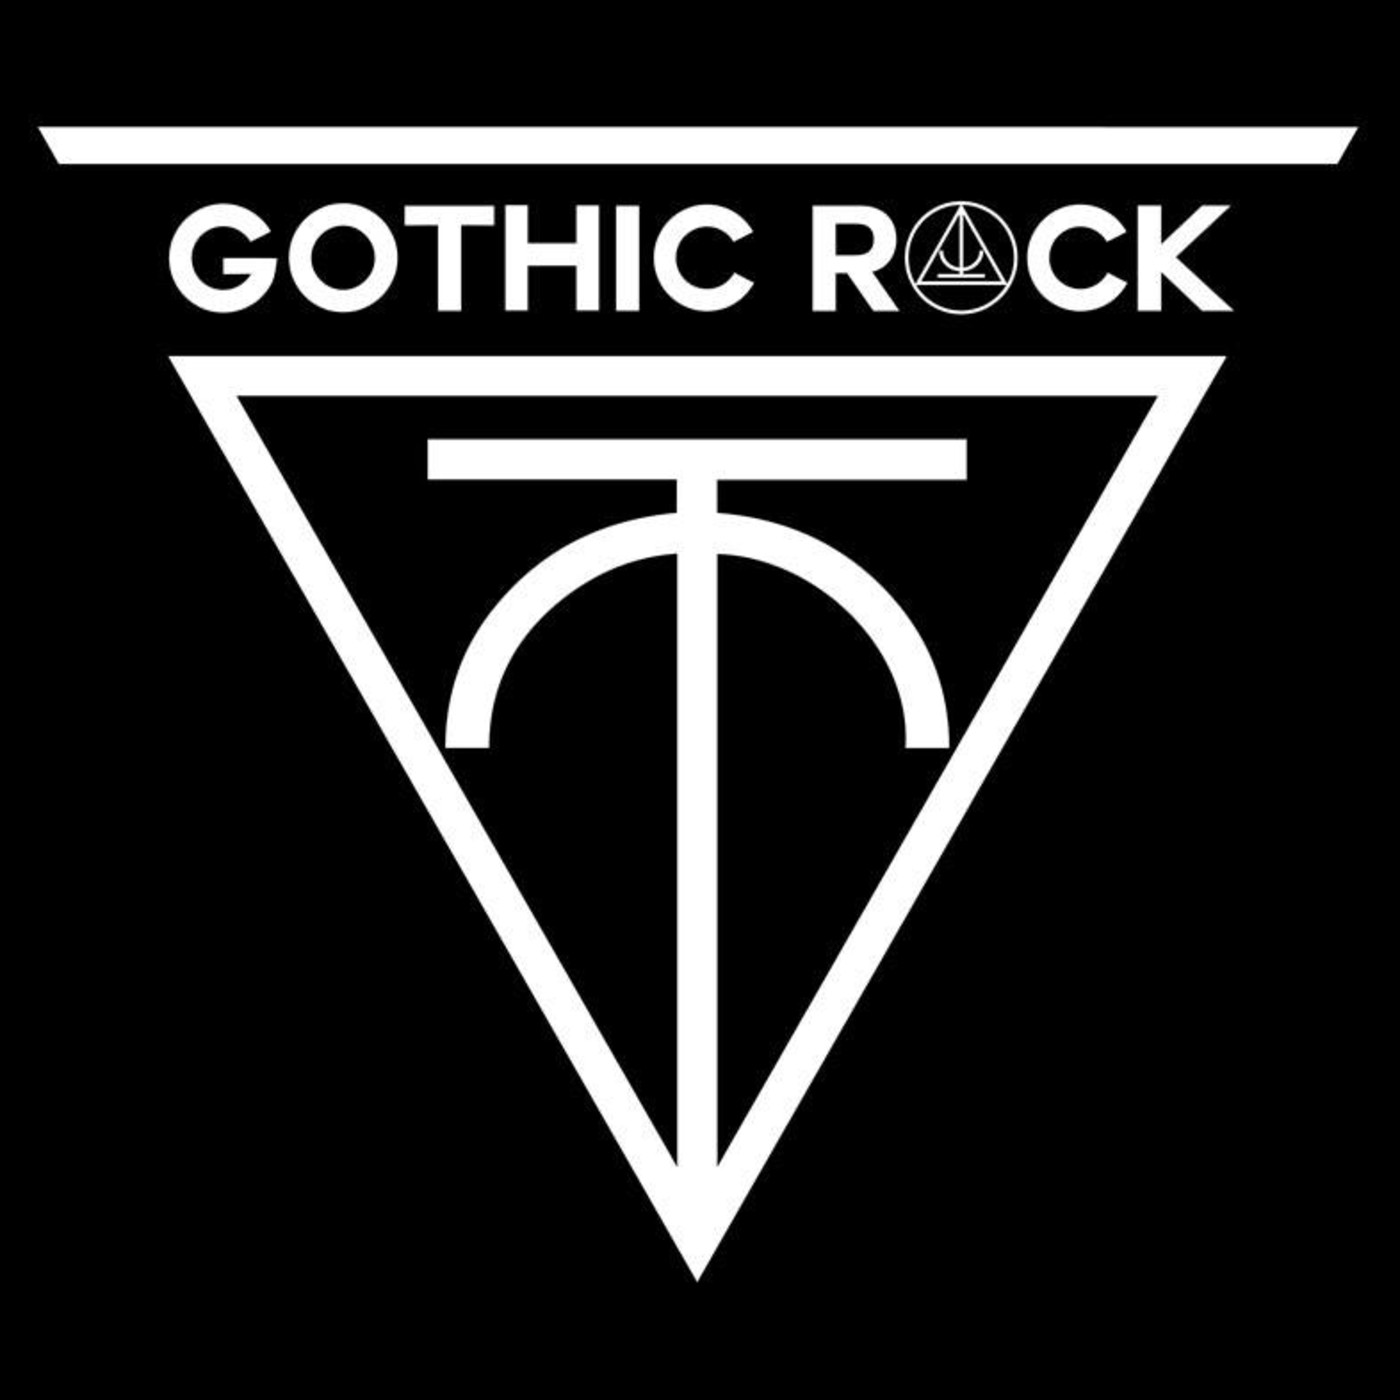 Esto es rock gótico 04 (17 septiembre 2017)